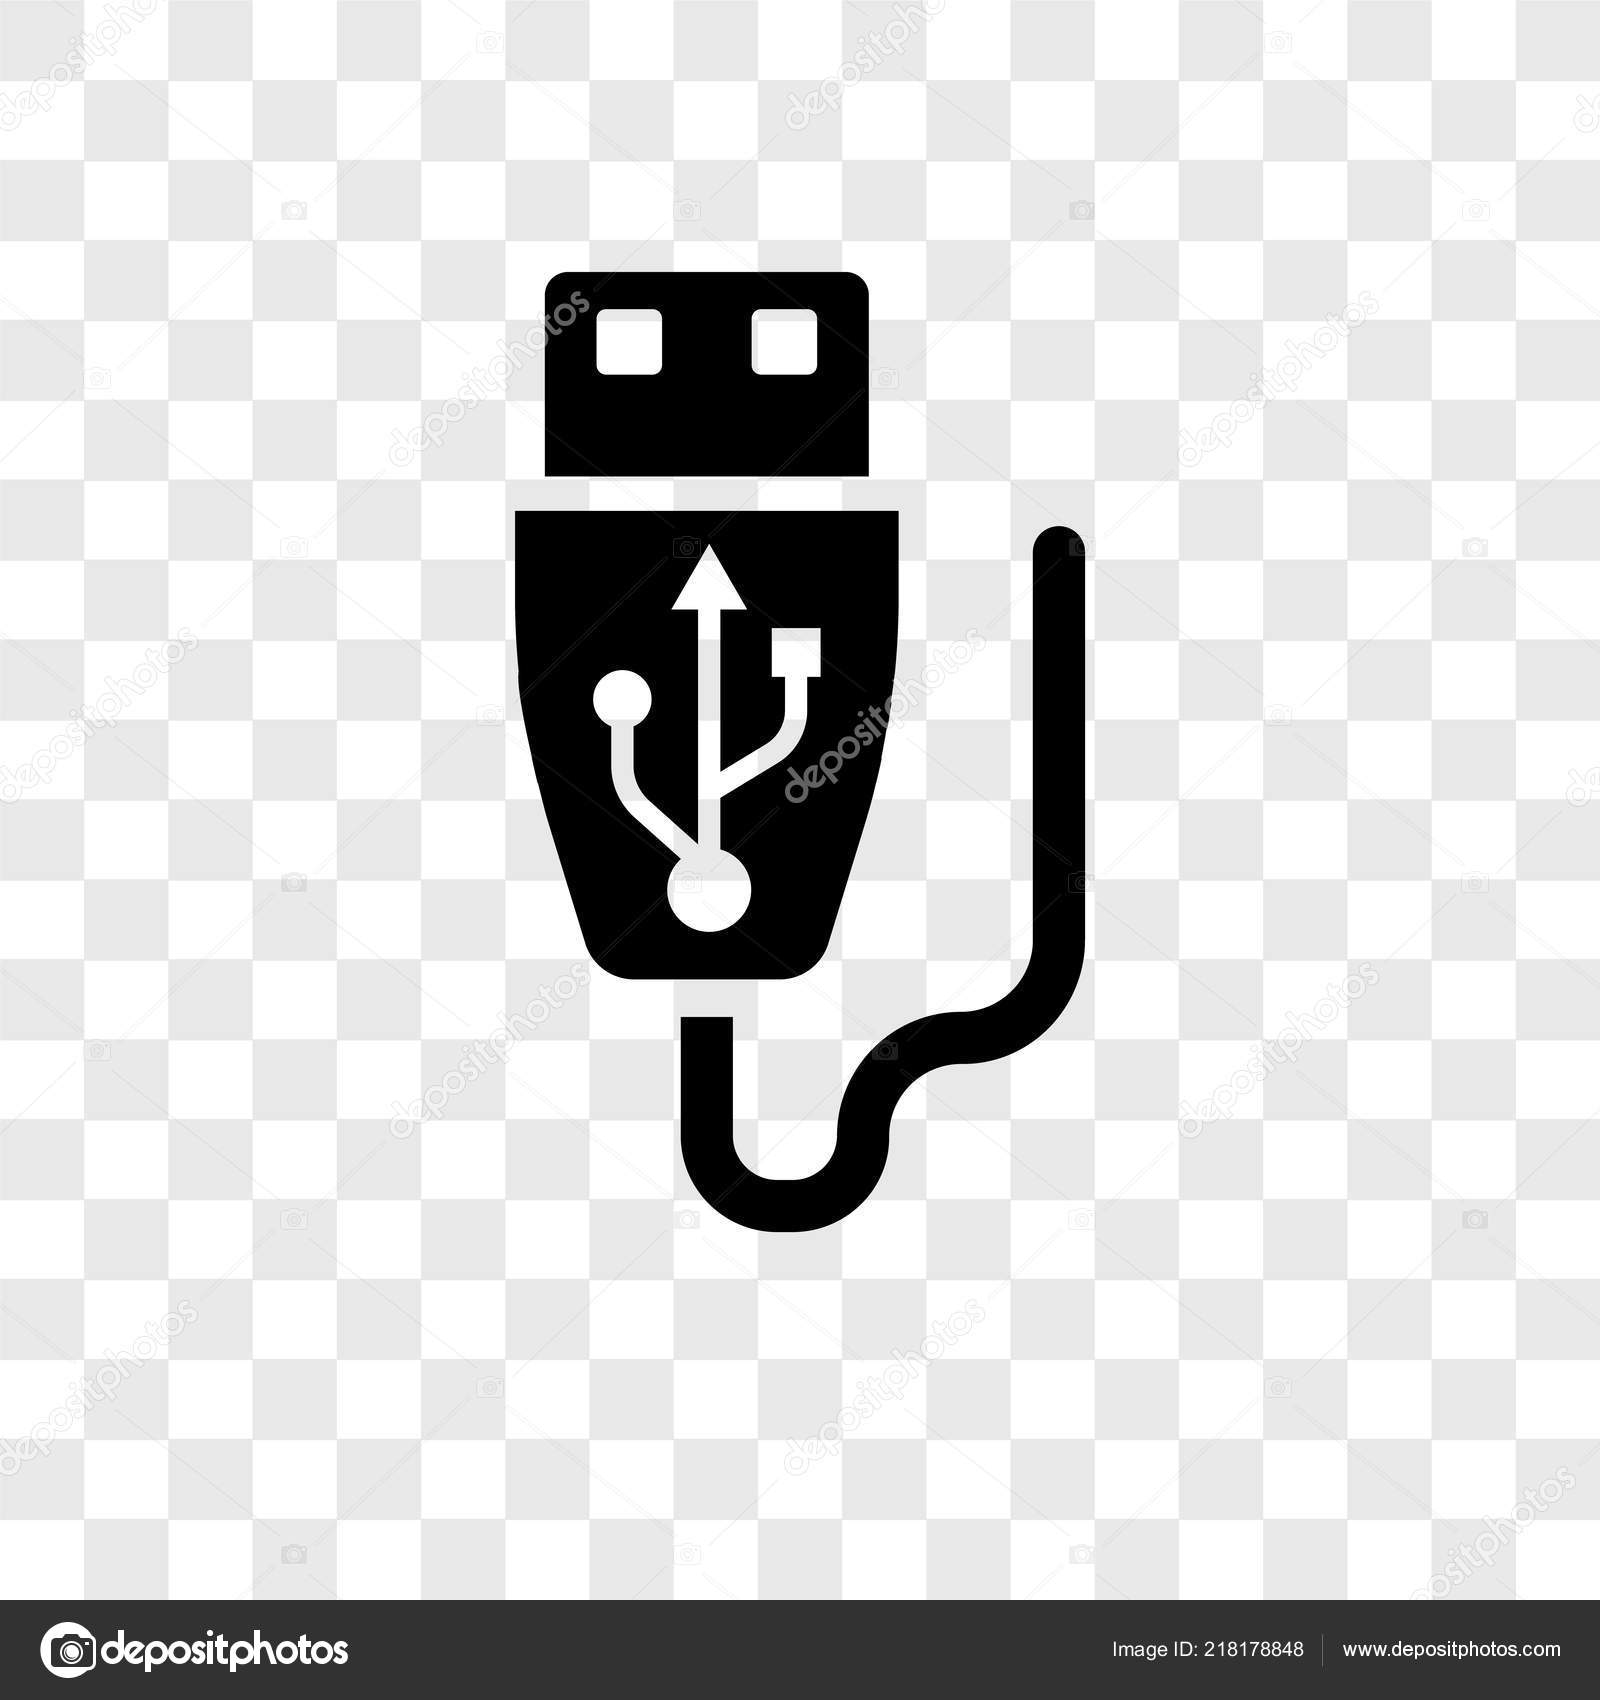 GGreat USB AntiBody logo